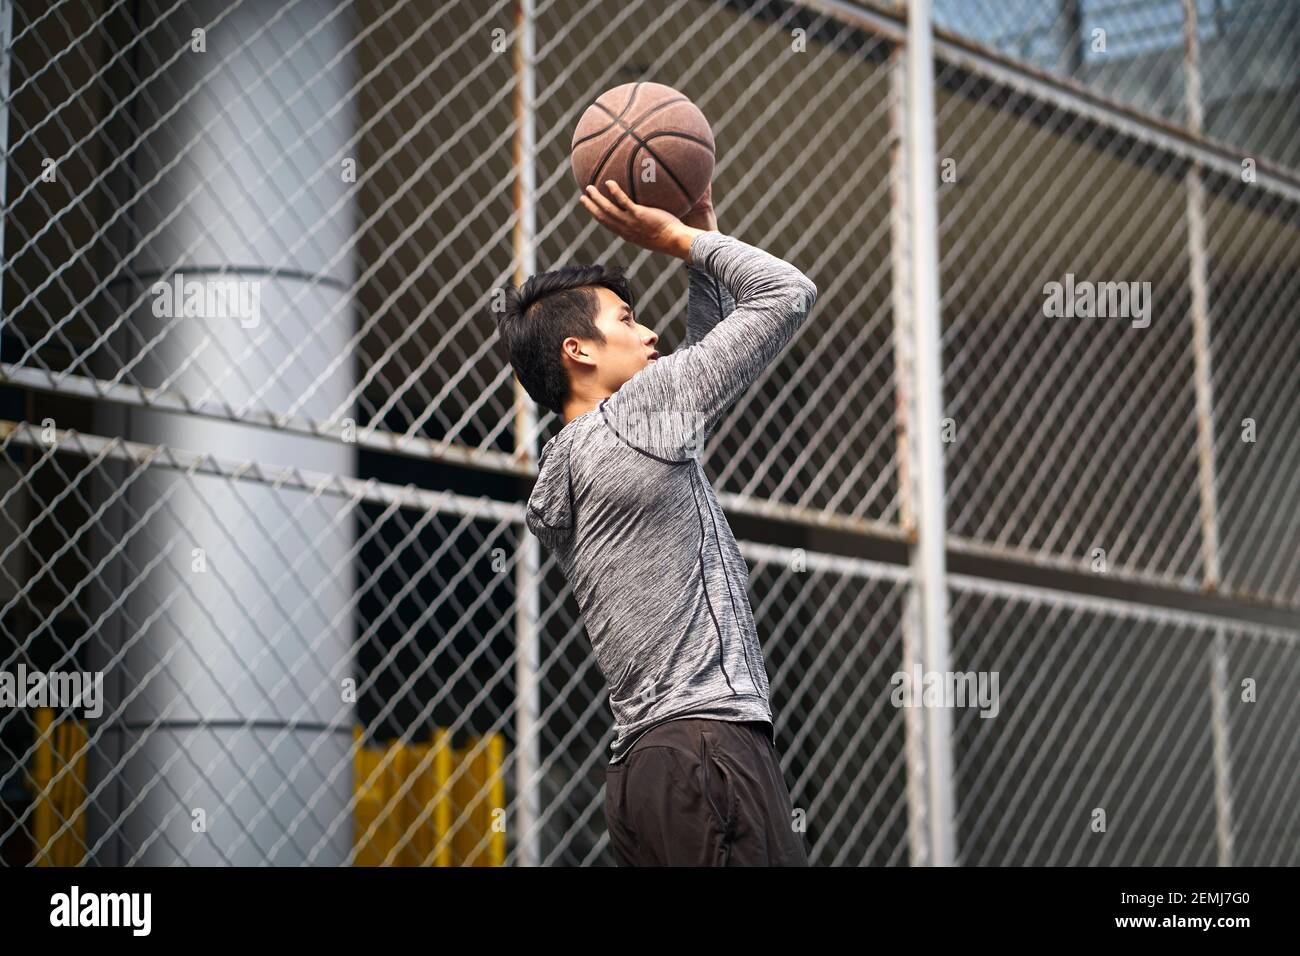 Junge asiatische männliche Basketball-Spieler unter einen Sprung Schuss auf Ein eingezäunter Platz im Freien Stockfoto